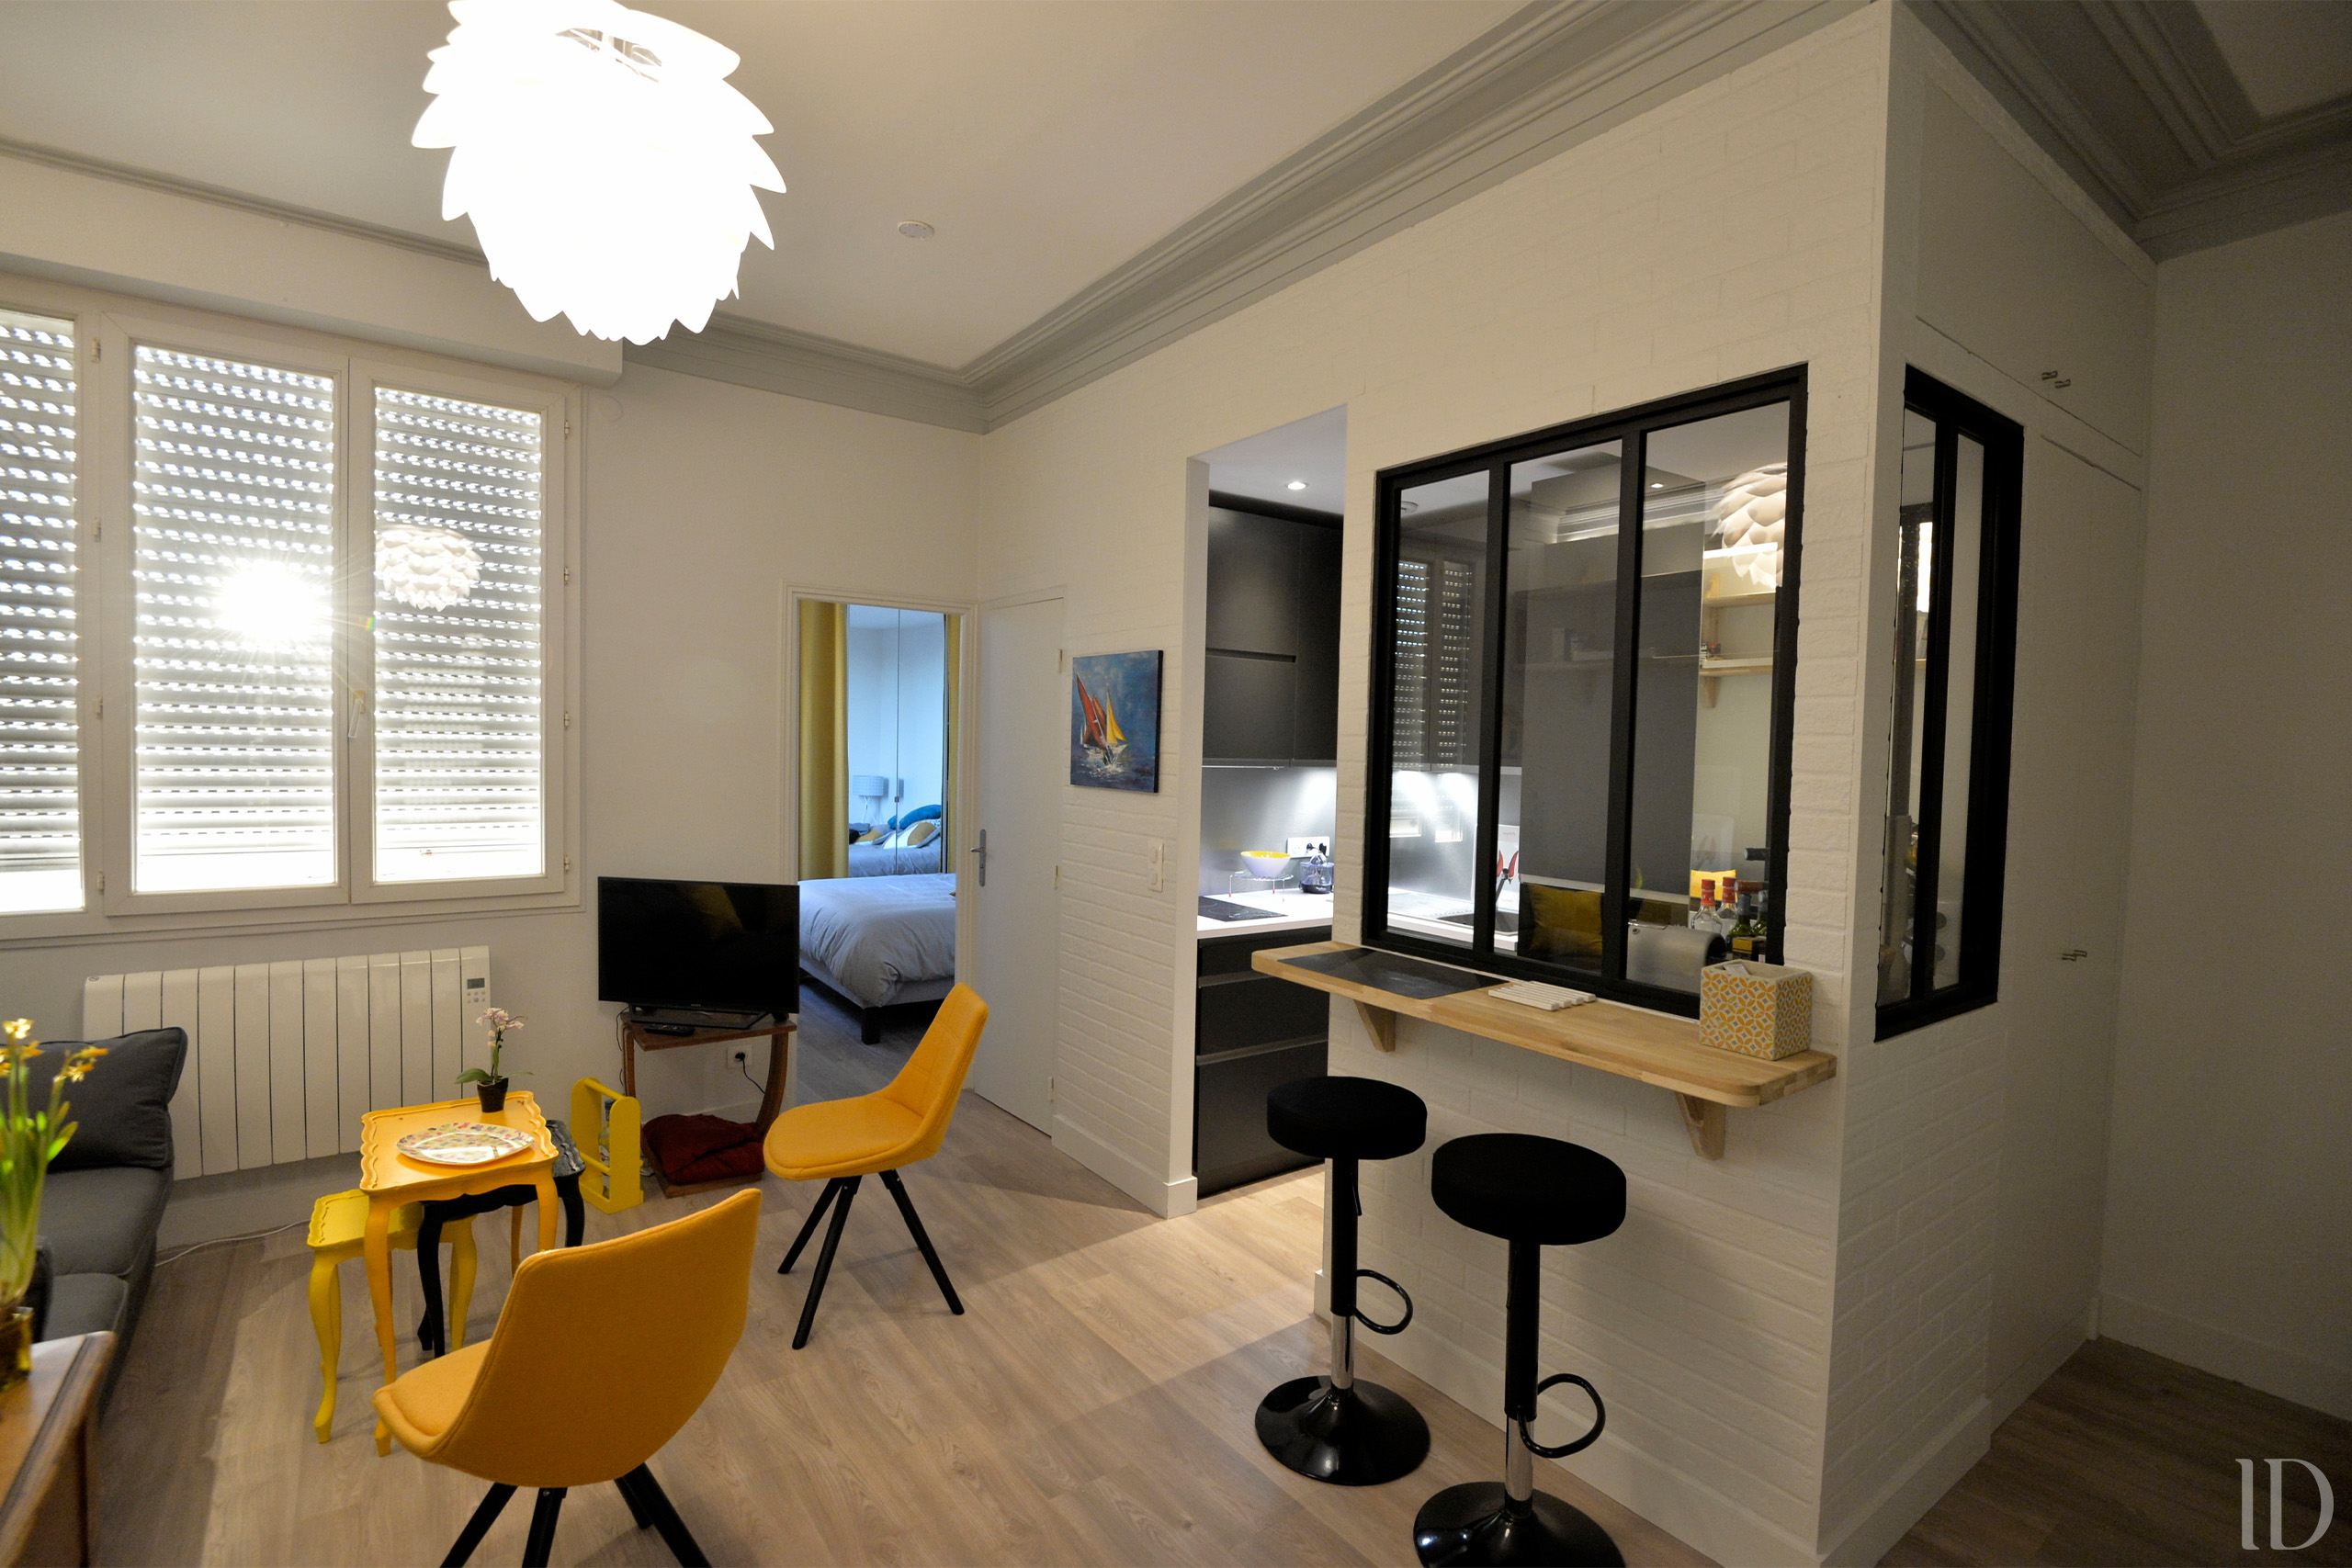 Rénovation entière d'un appartement T2. Rangement optimisé et cuisine ouverte sur séjour avec verrière atelier noir et mange debout